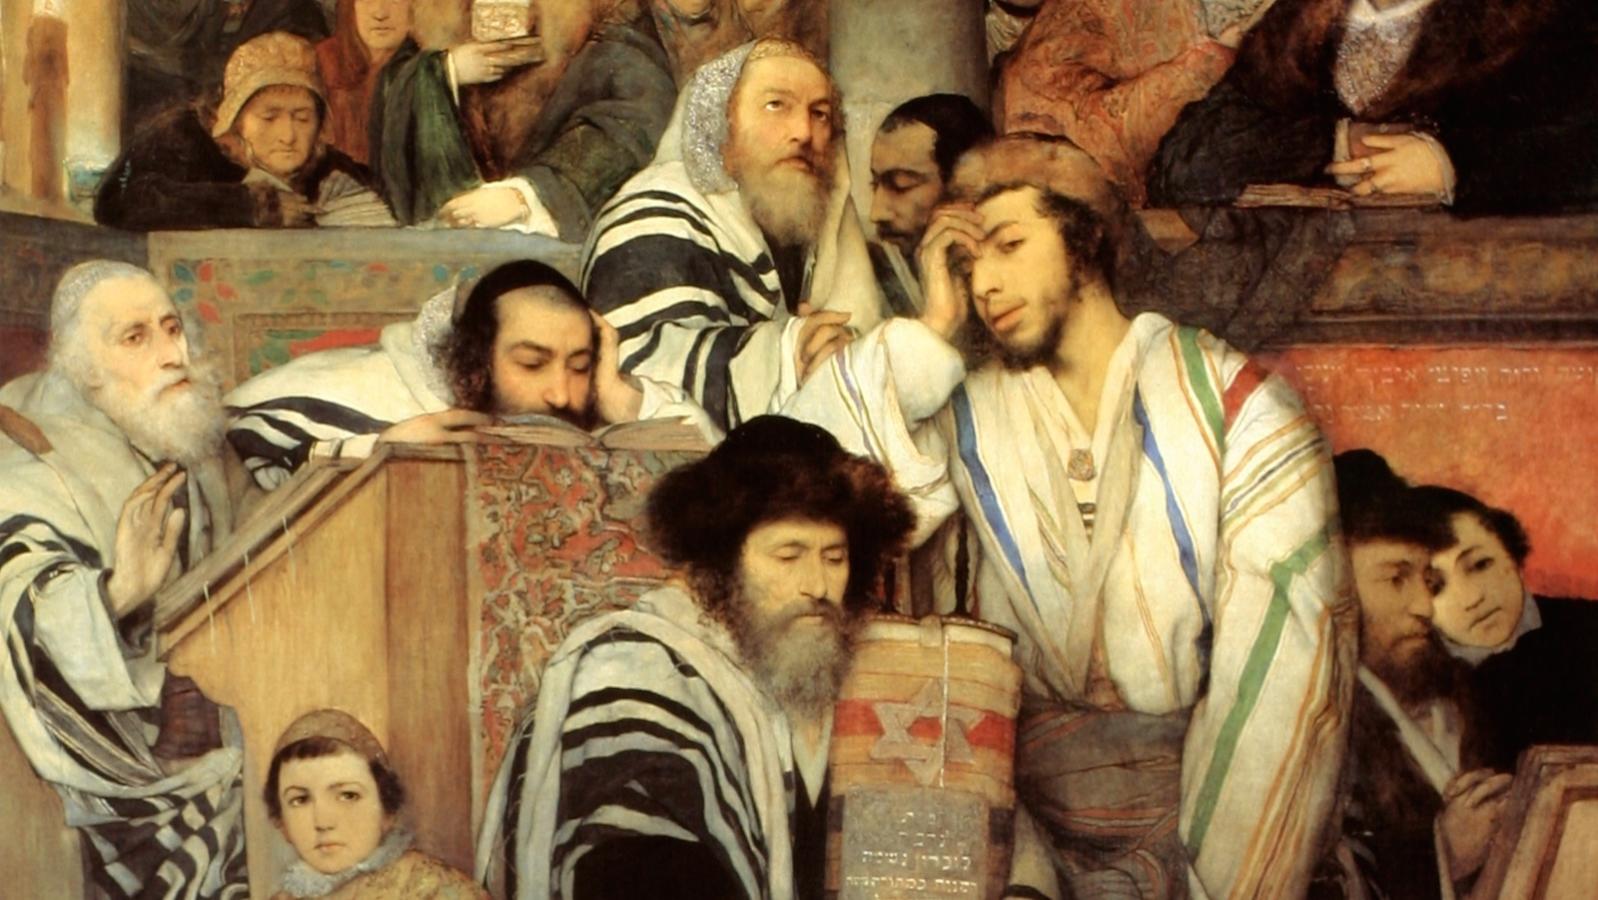 A zsidó ima, ami tulajdonképpen nem is ima